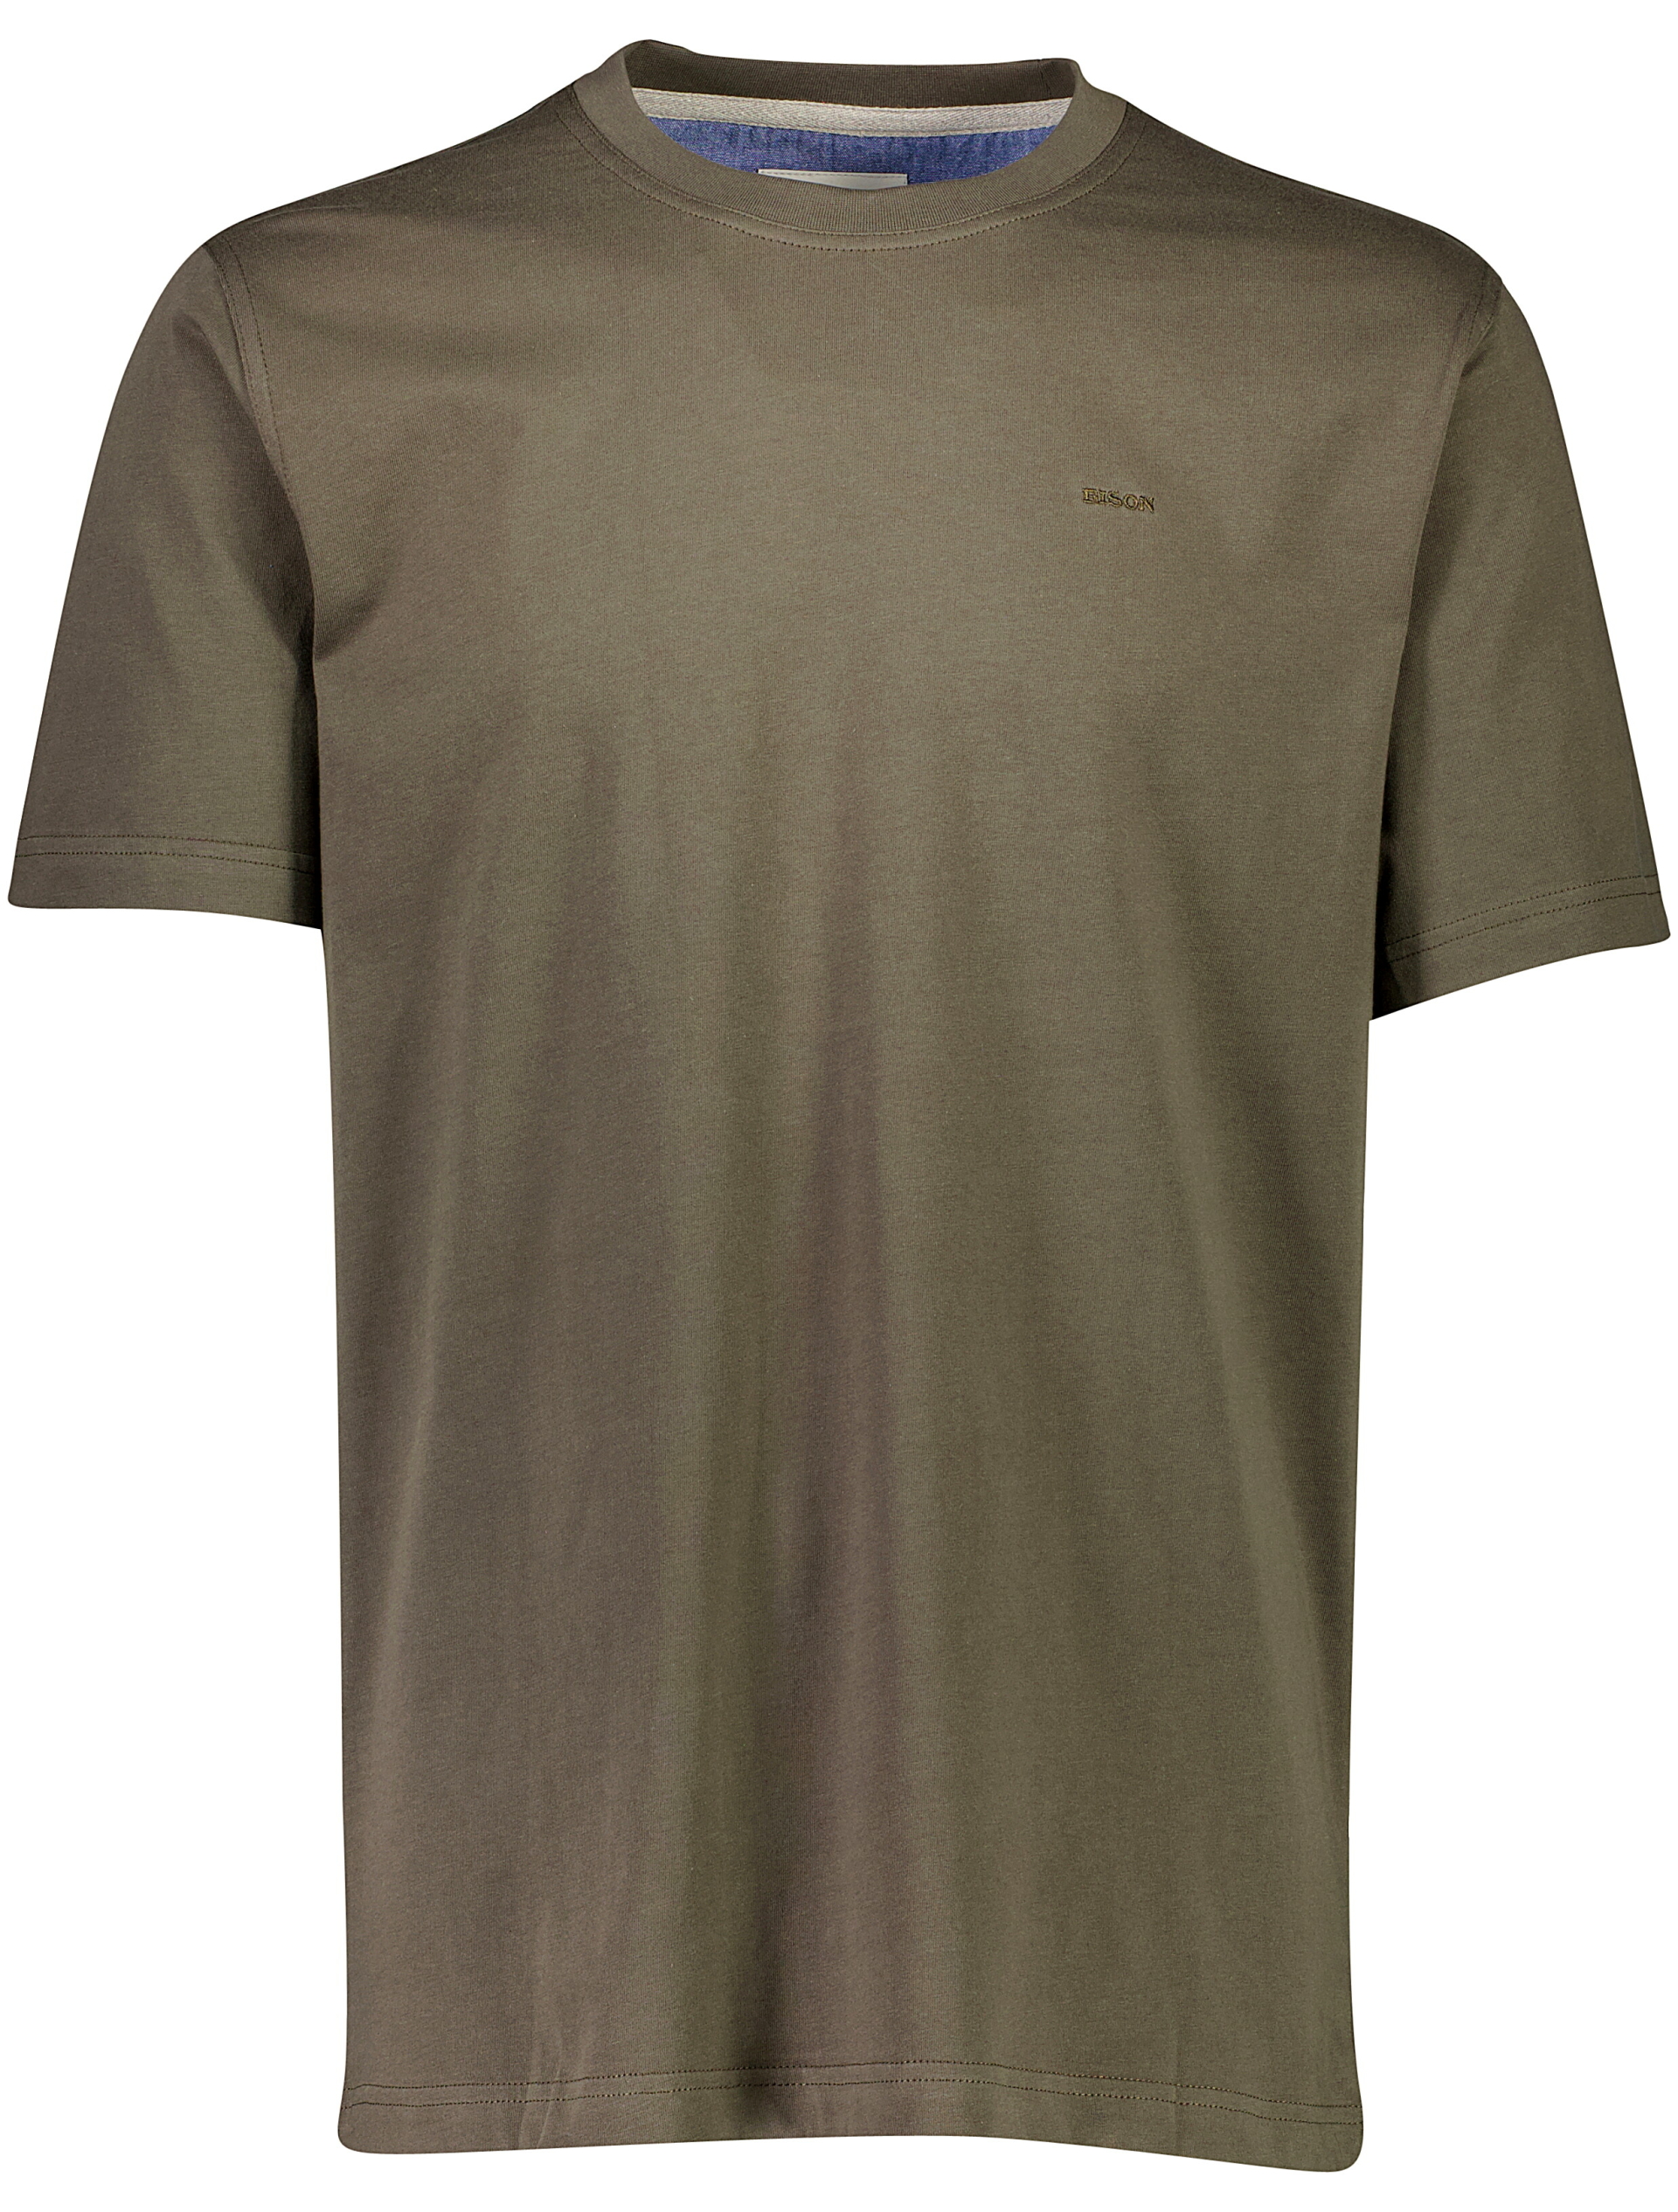 Bison T-shirt grön / army grey